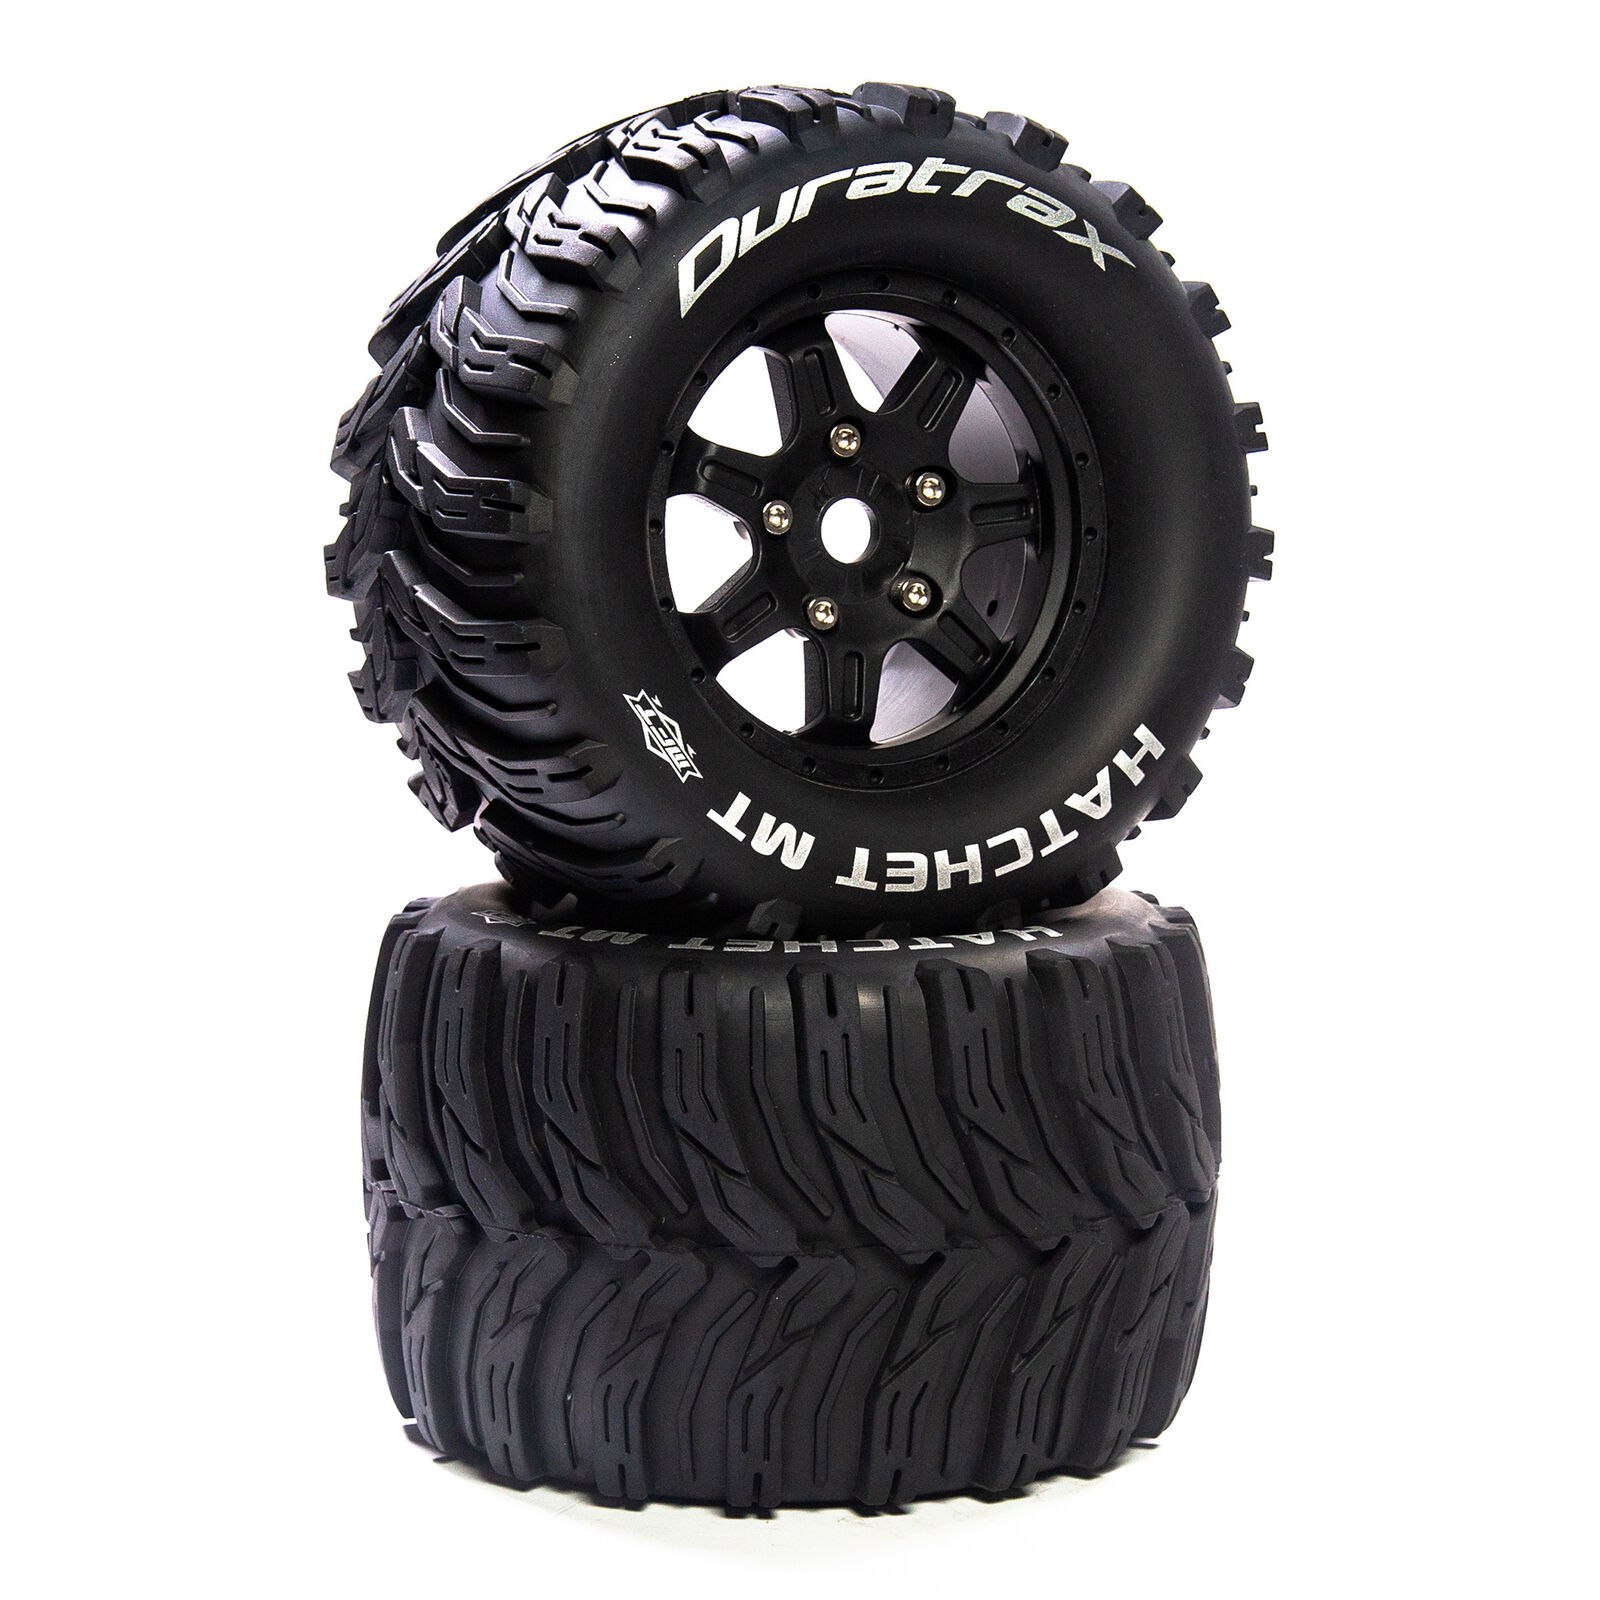 Hatchet MT Belt 3.8" Mounted Front/Rear Tires 0 Offset 17mm, Black (2)